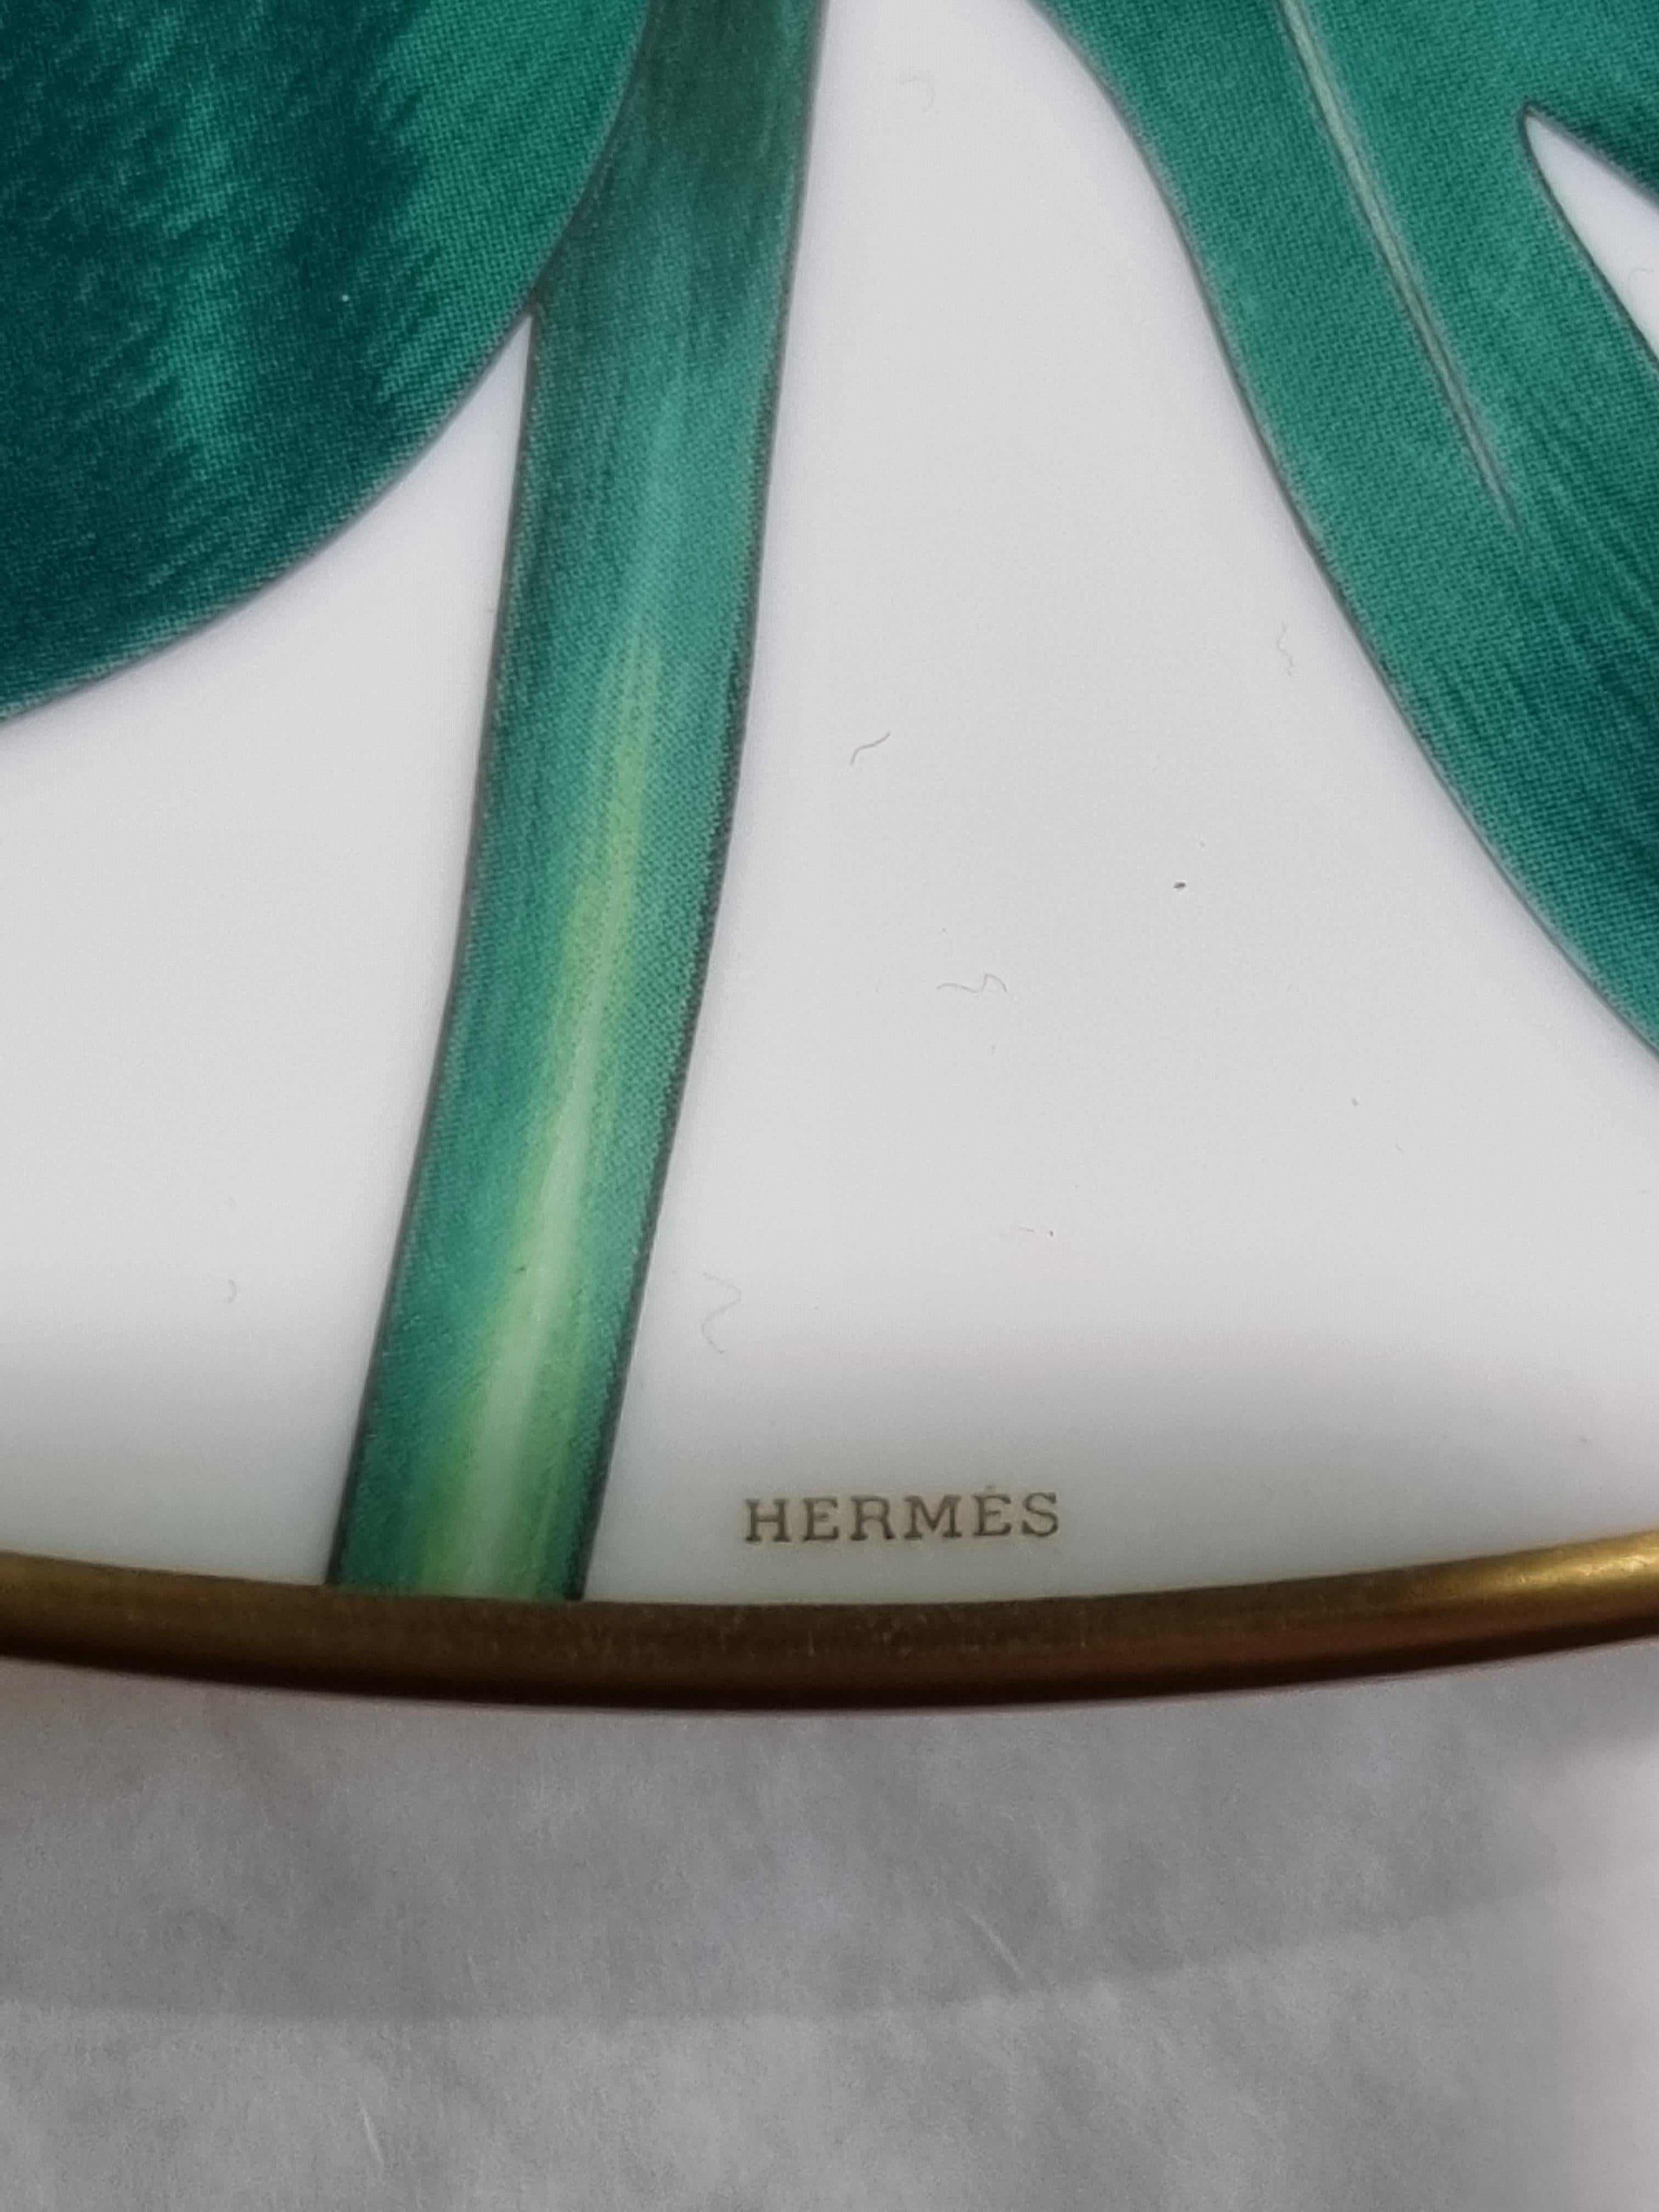 Hermès Porzellan 